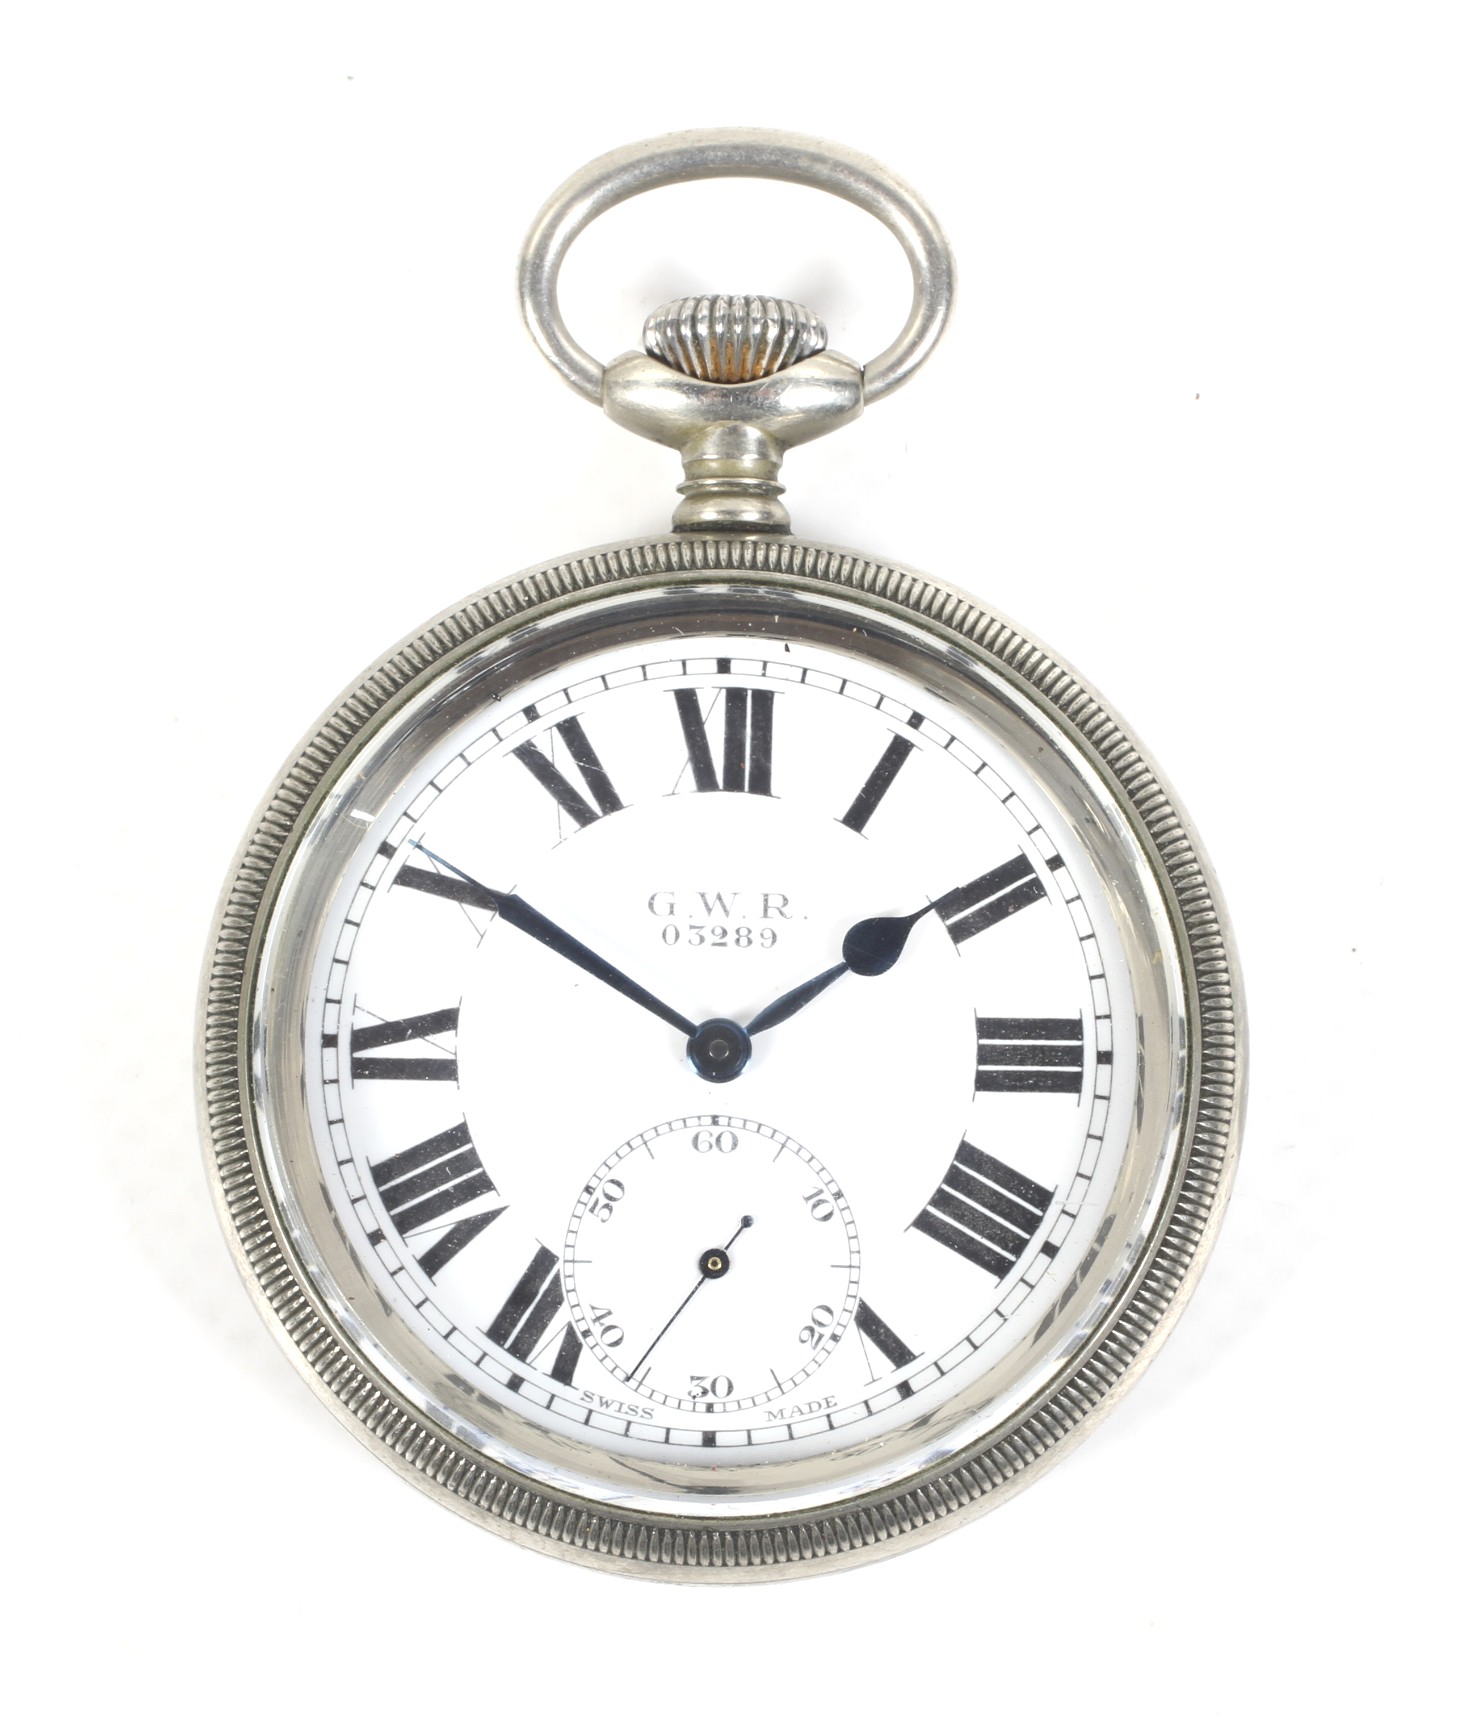 G.W.R. 03289, a Swiss nickel cased open face keyless pocket watch, no 3712942.